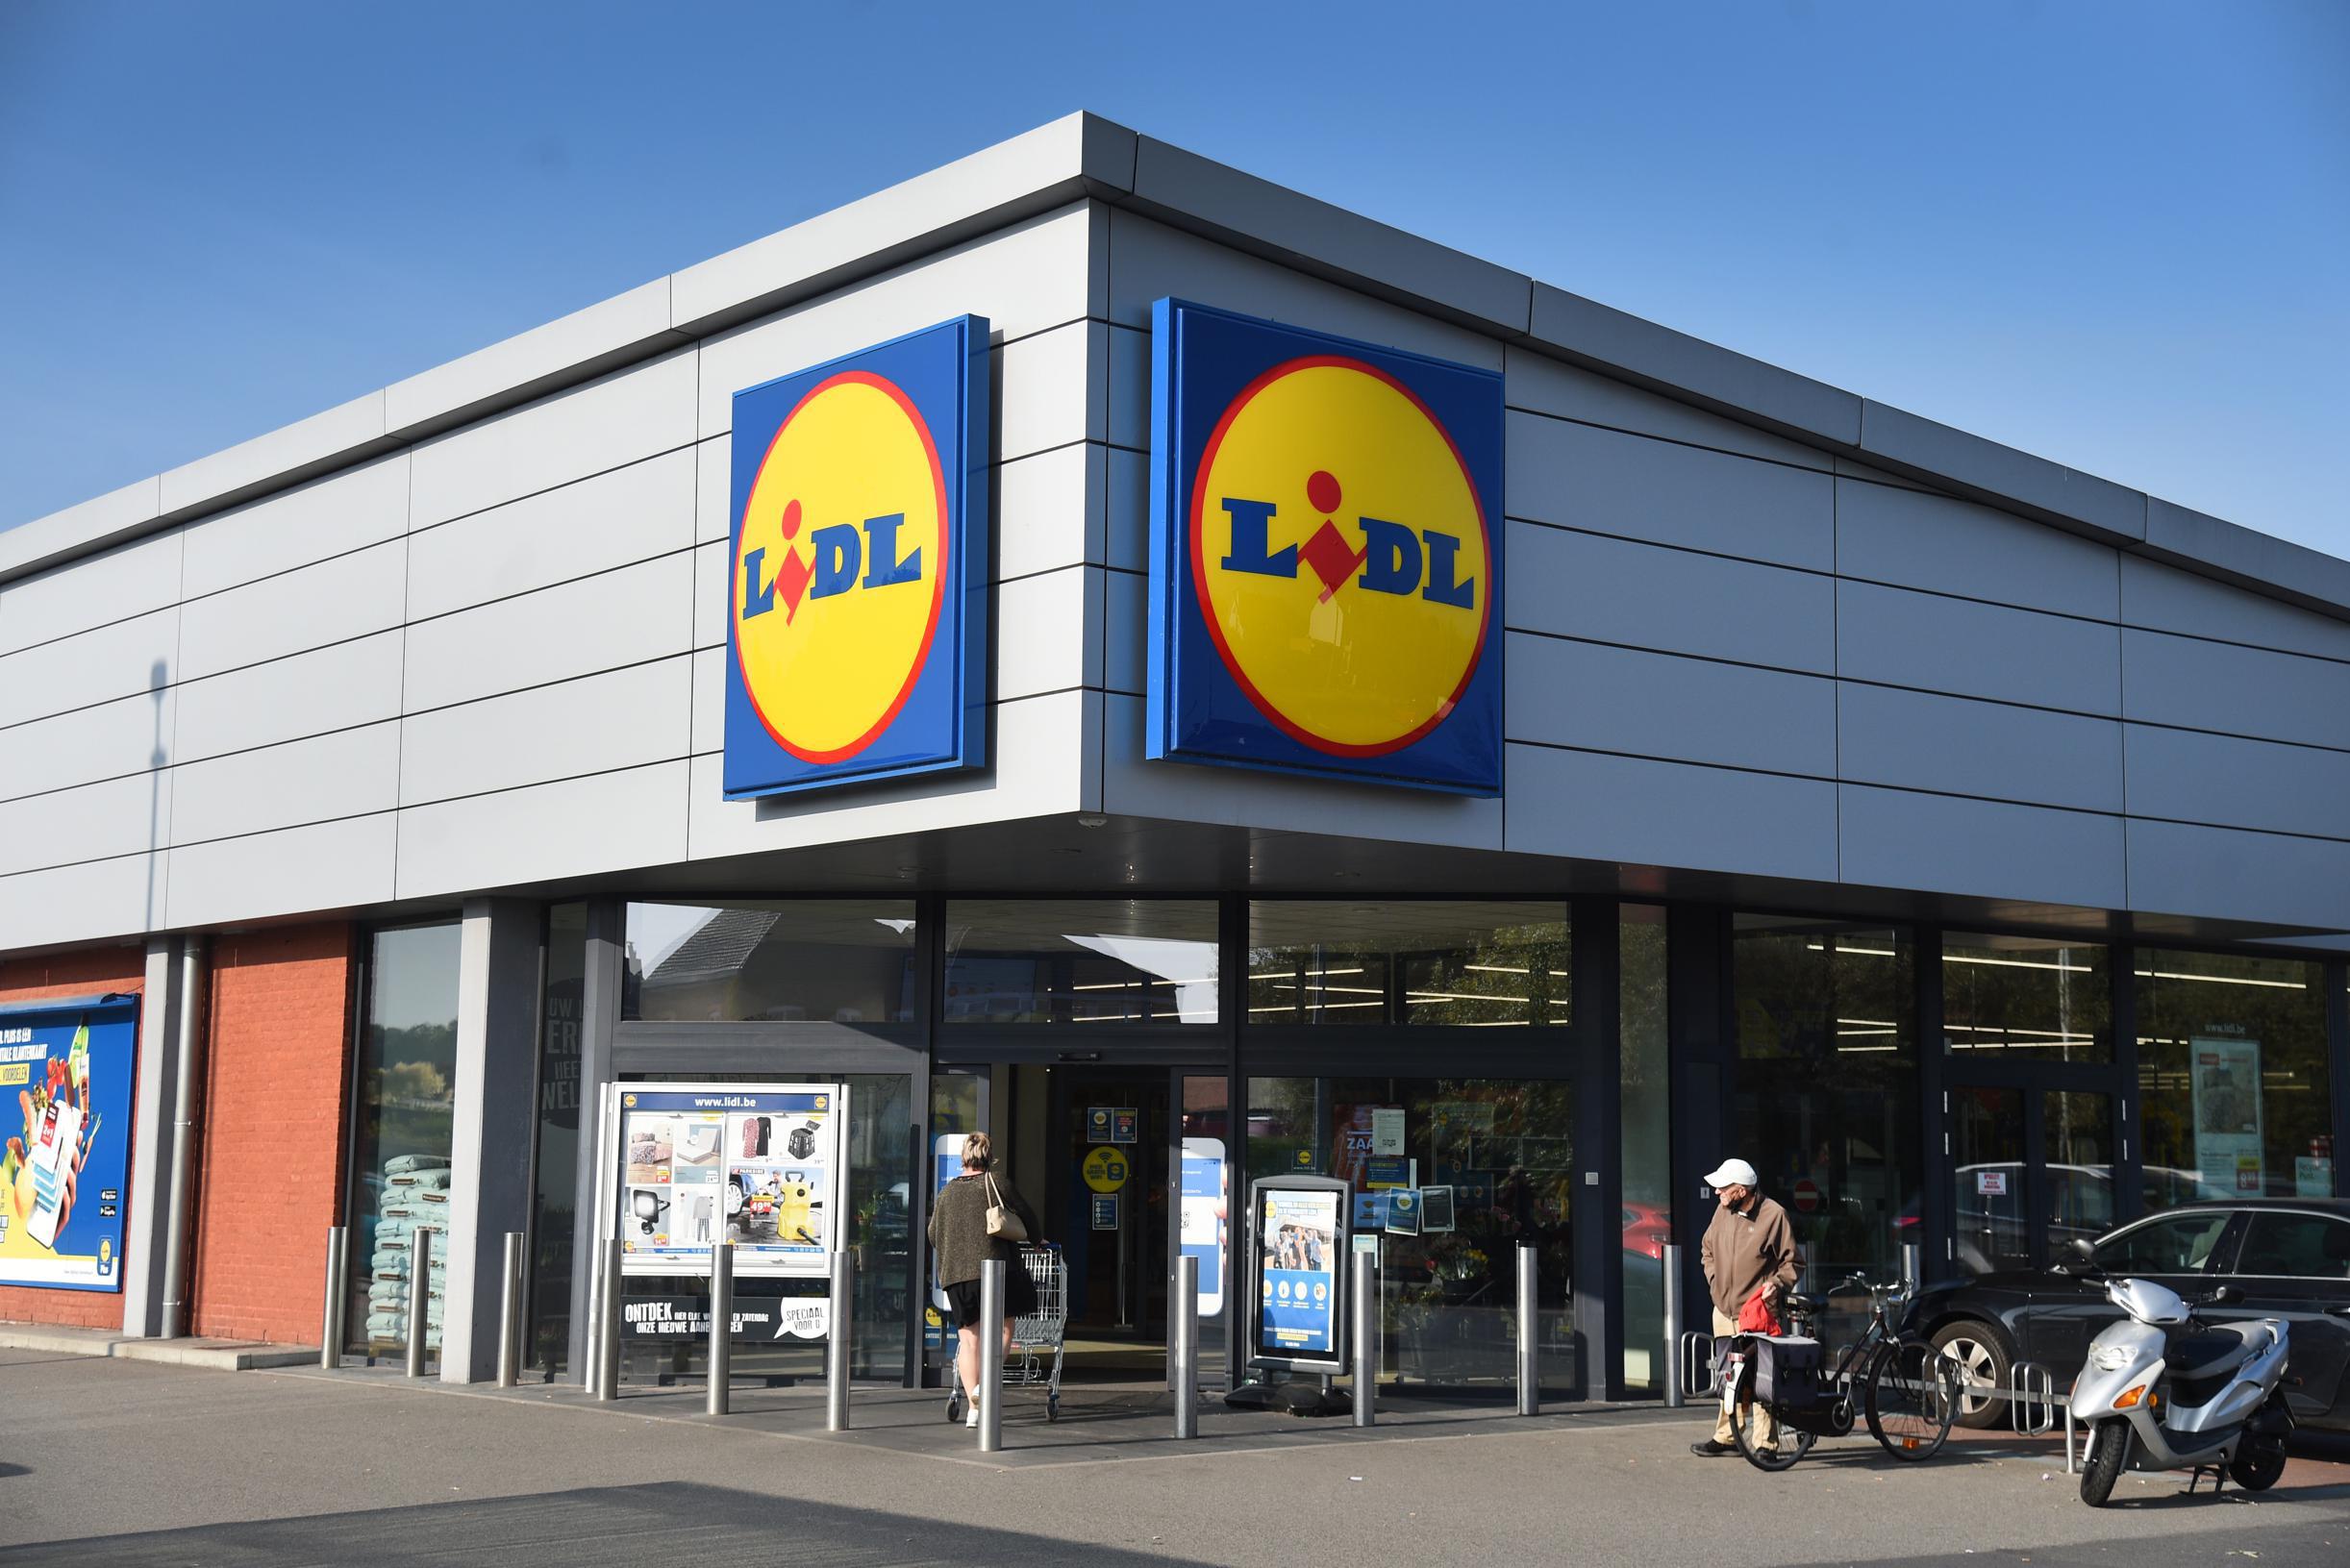 I supermercati limitrofi non sono allestiti con la promozione Lidl